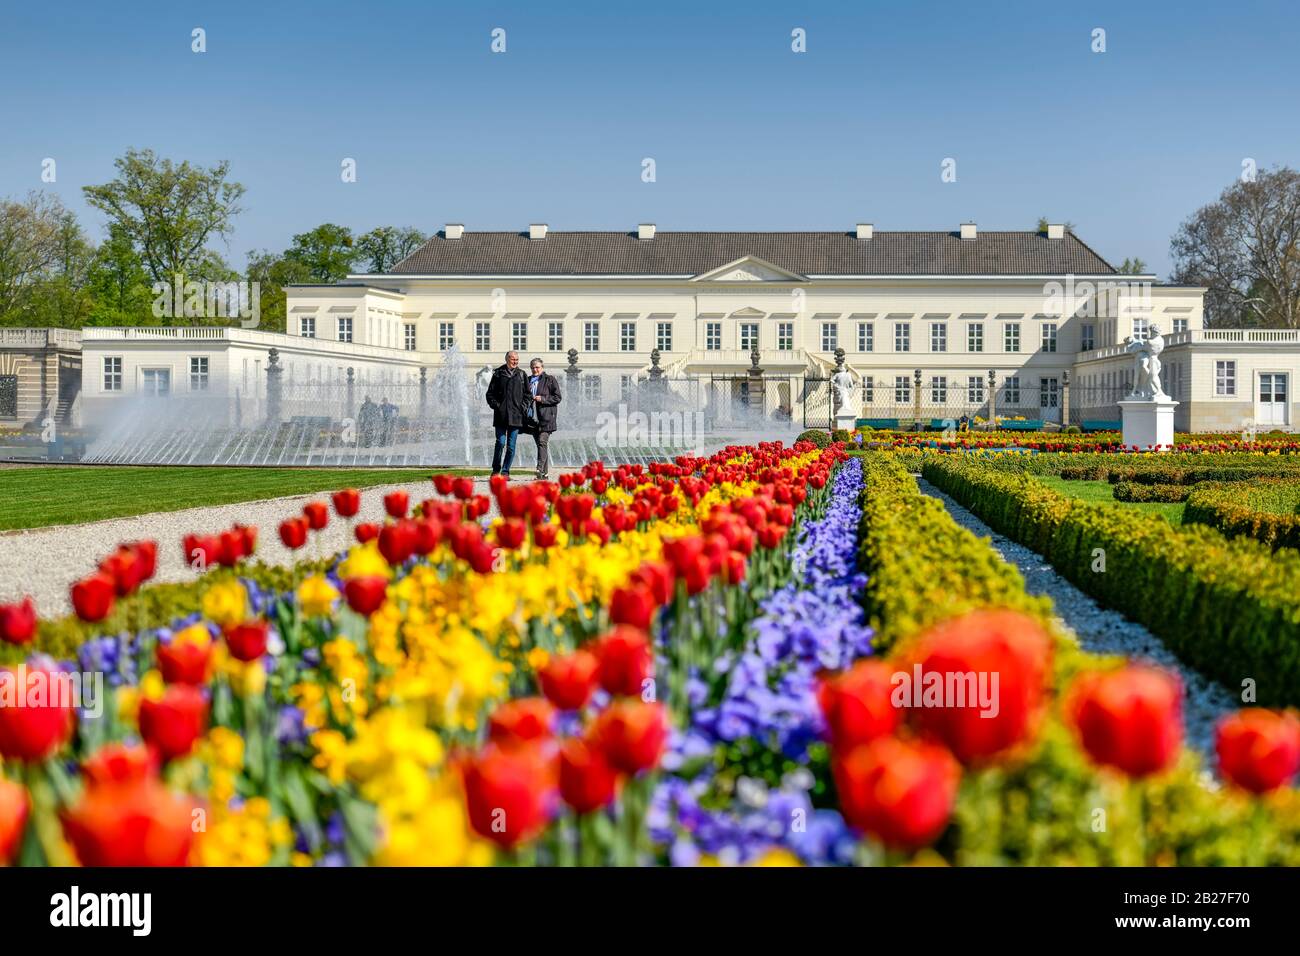 Tulpenbeete, Glockenfontäne, Schloß, Großer Garten, Herrenhäuser Gärten, Hannover, Niedersachsen, Deutschland Stock Photo